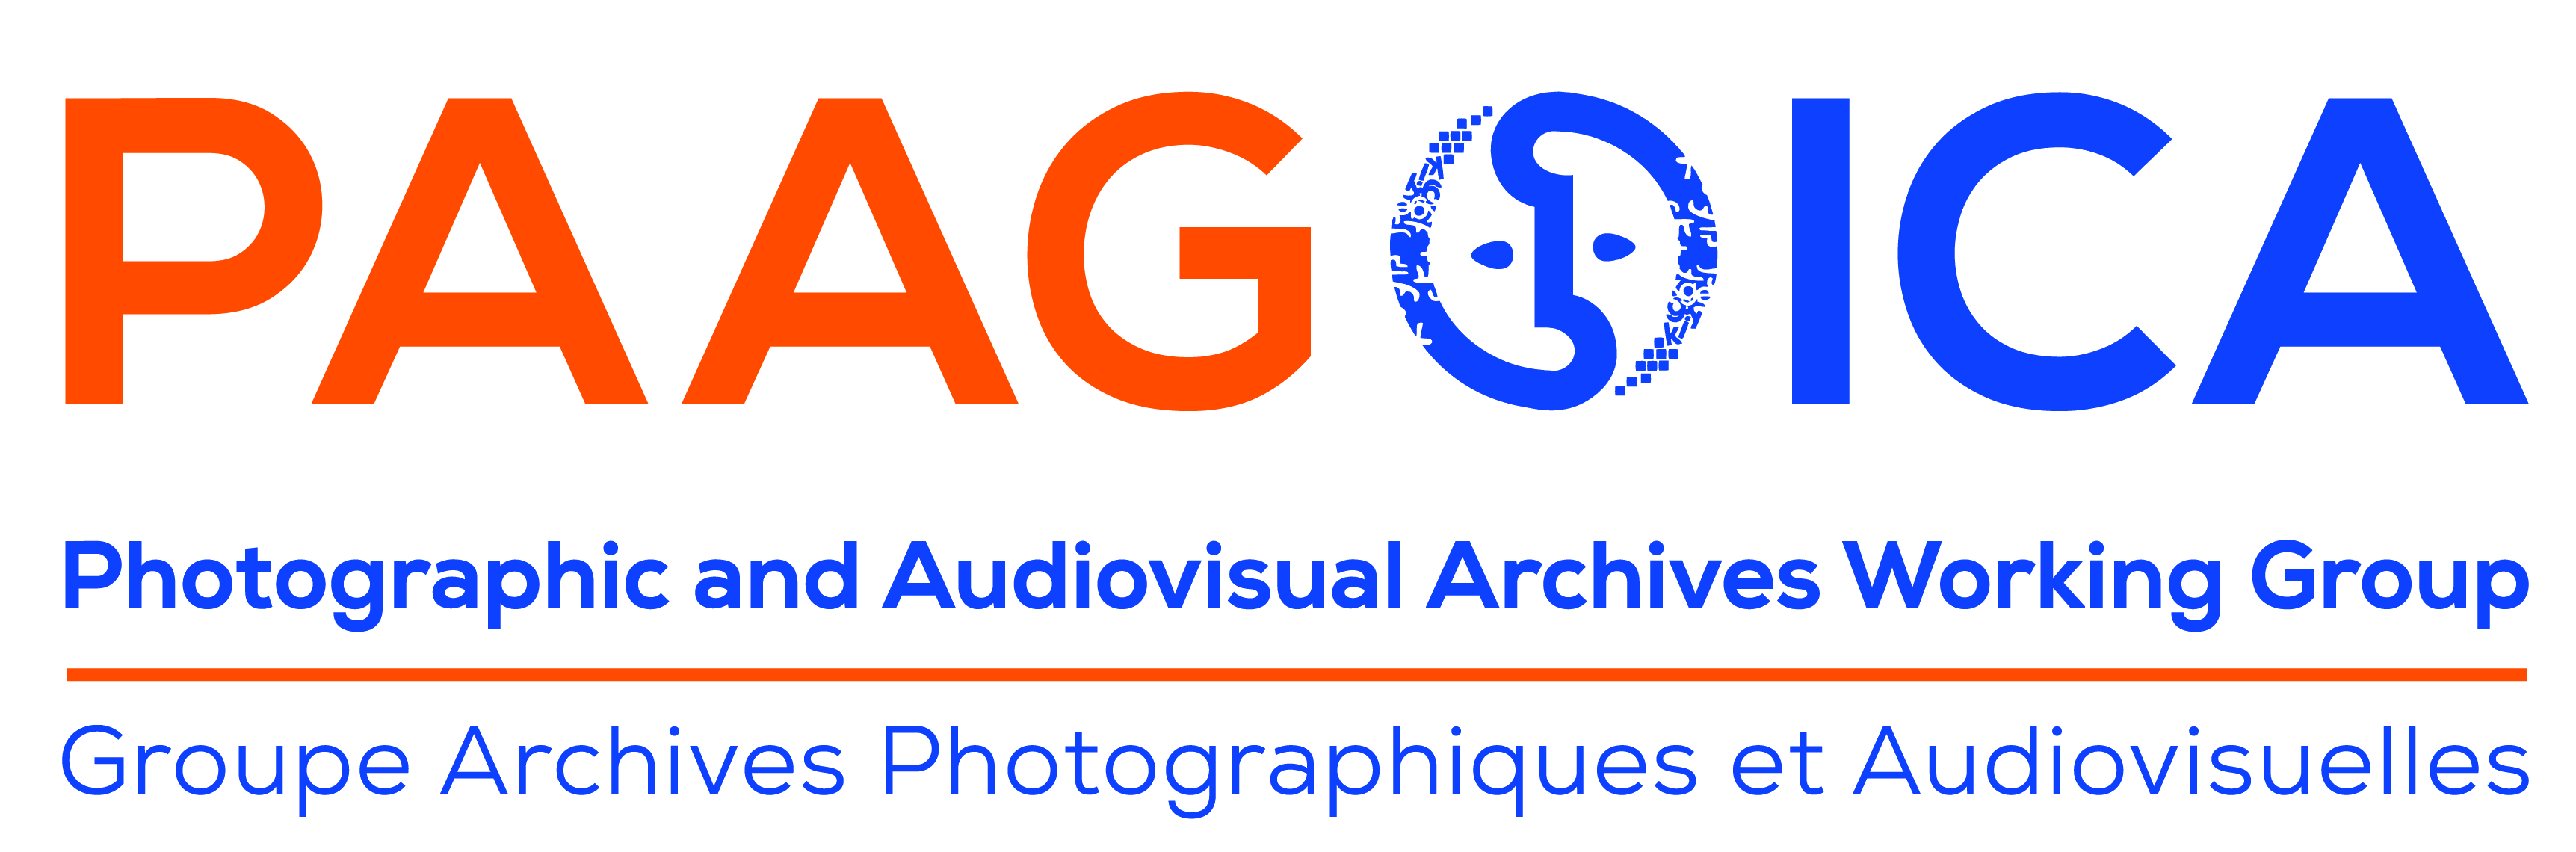 Conselho Internacional de Arquivos  Grupo de Trabalho sobre Arquivos Fotográficos e Audiovisuais